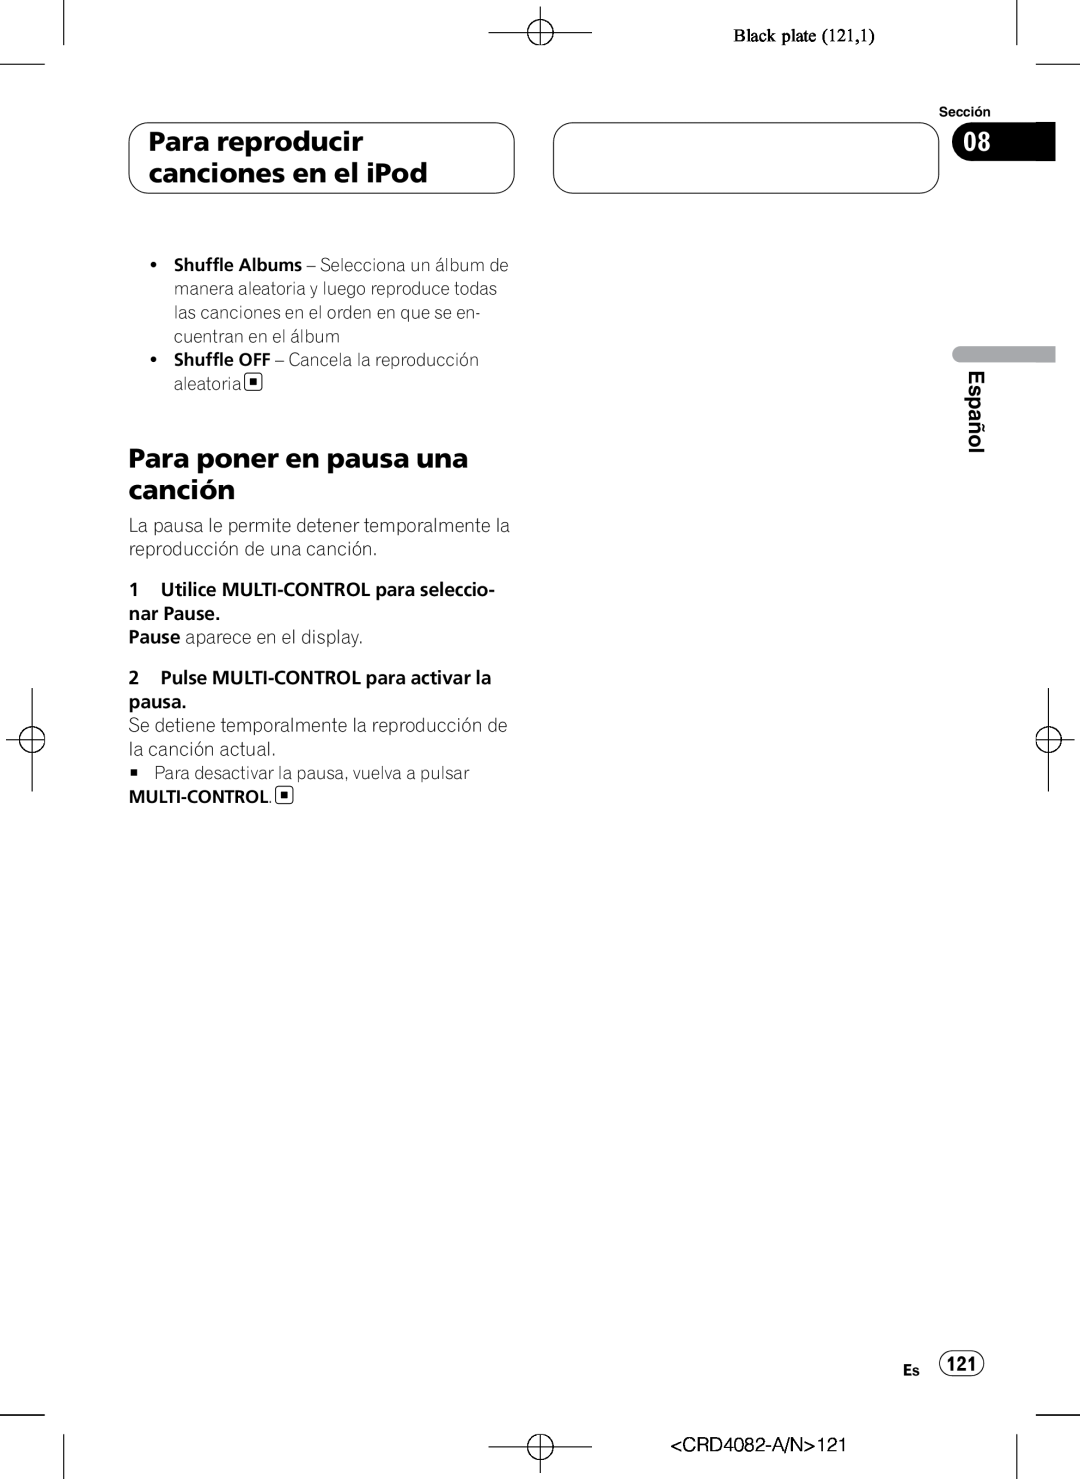 Pioneer DEH-P80RS Para poner en pausa una canción, Black plate 121,1, Para reproducir canciones en el iPod, Español 